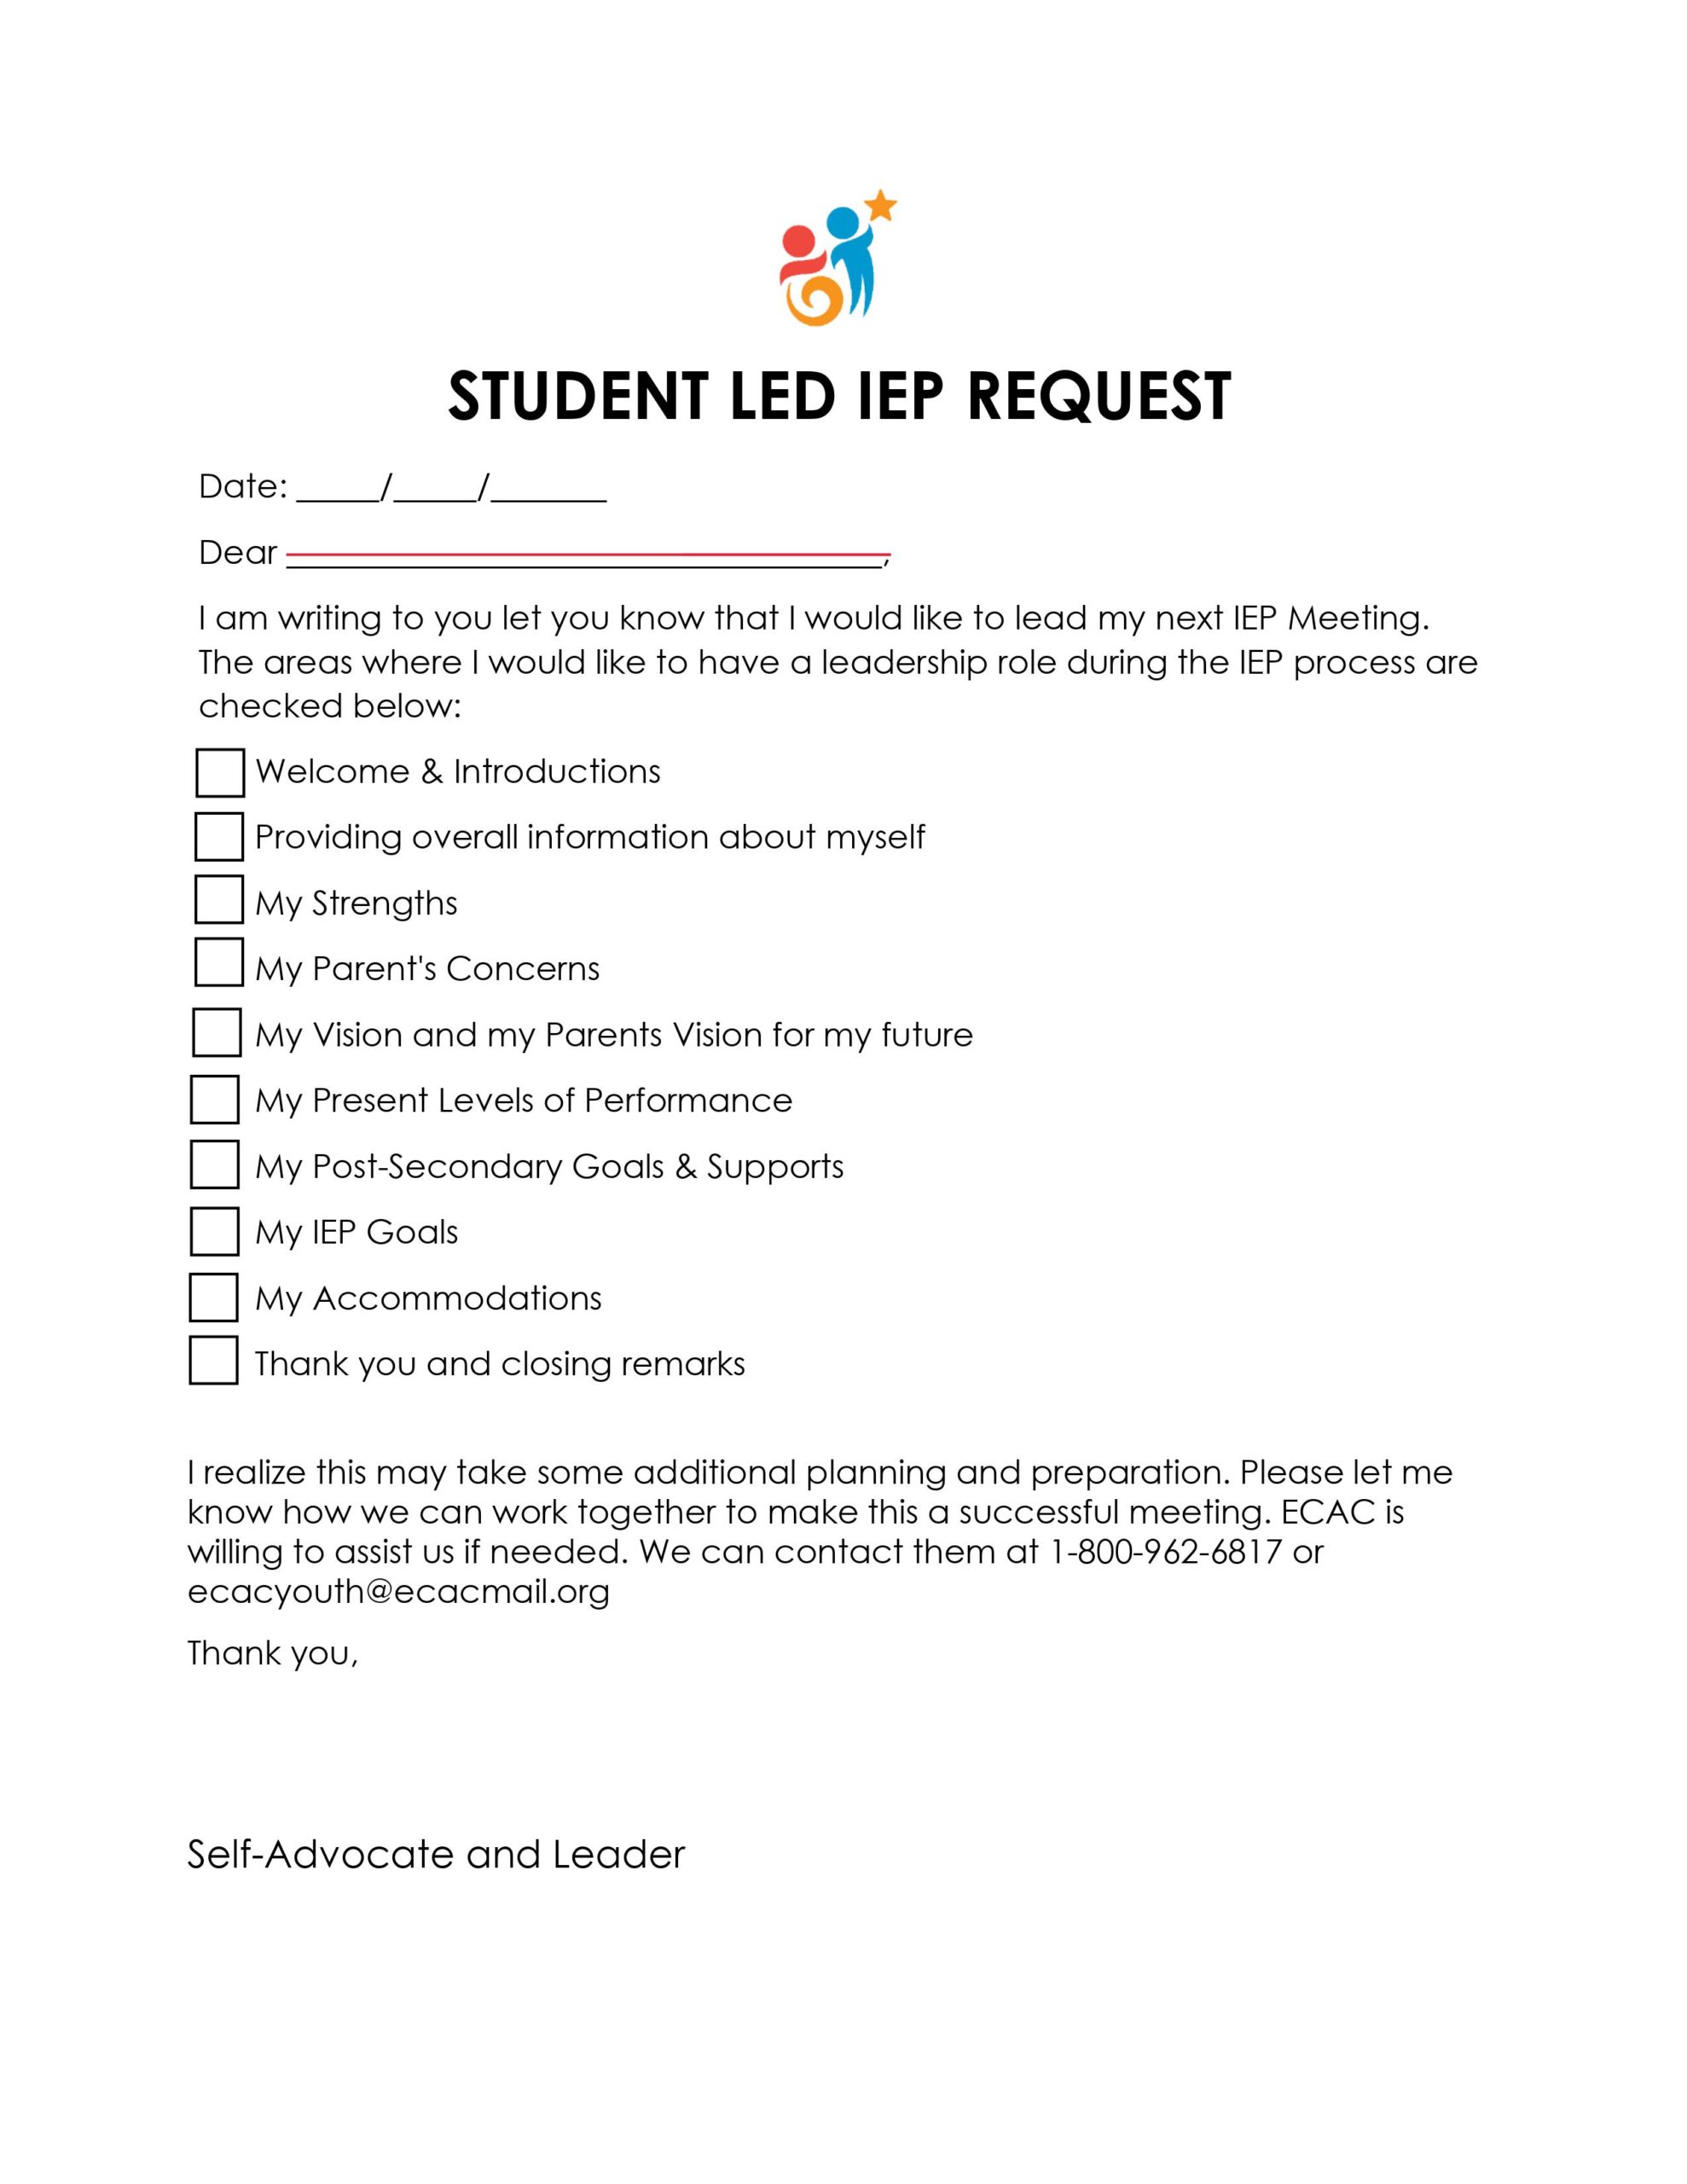 Imagen de la primera página del formulario de solicitud de PEI dirigido por el alumno